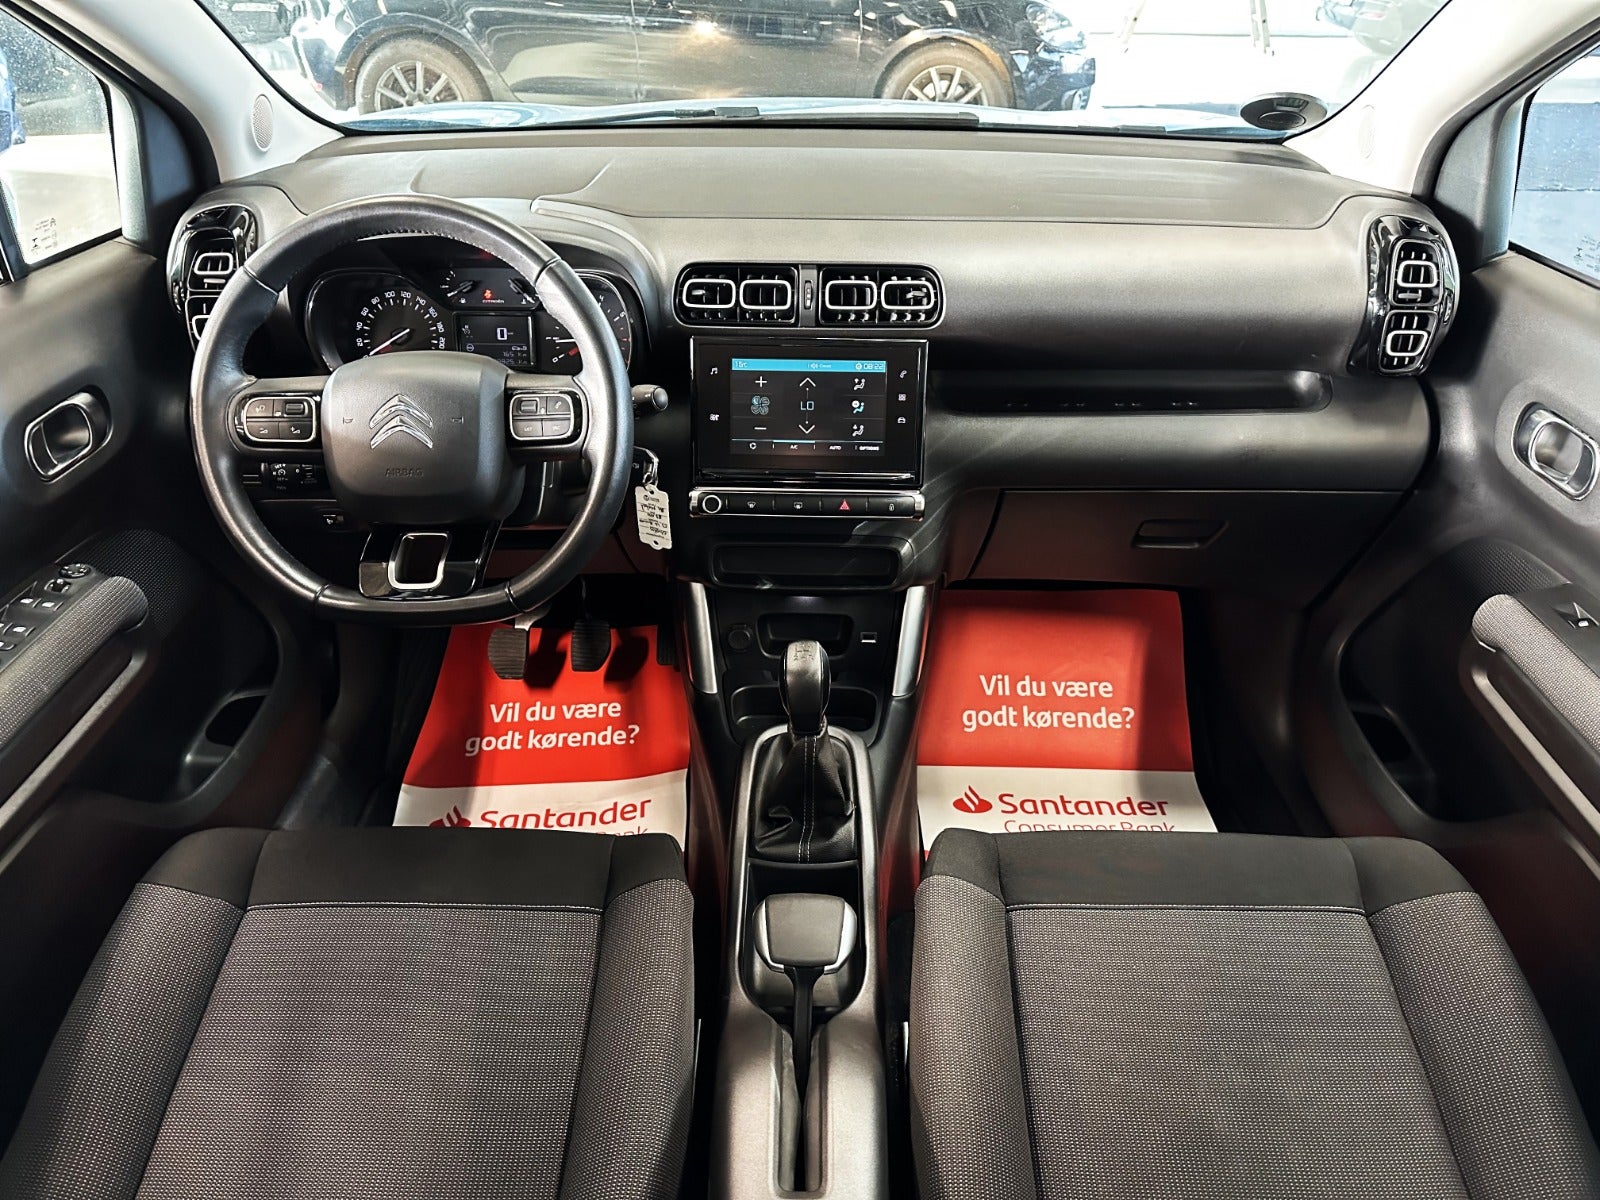 Citroën C3 Aircross 2019